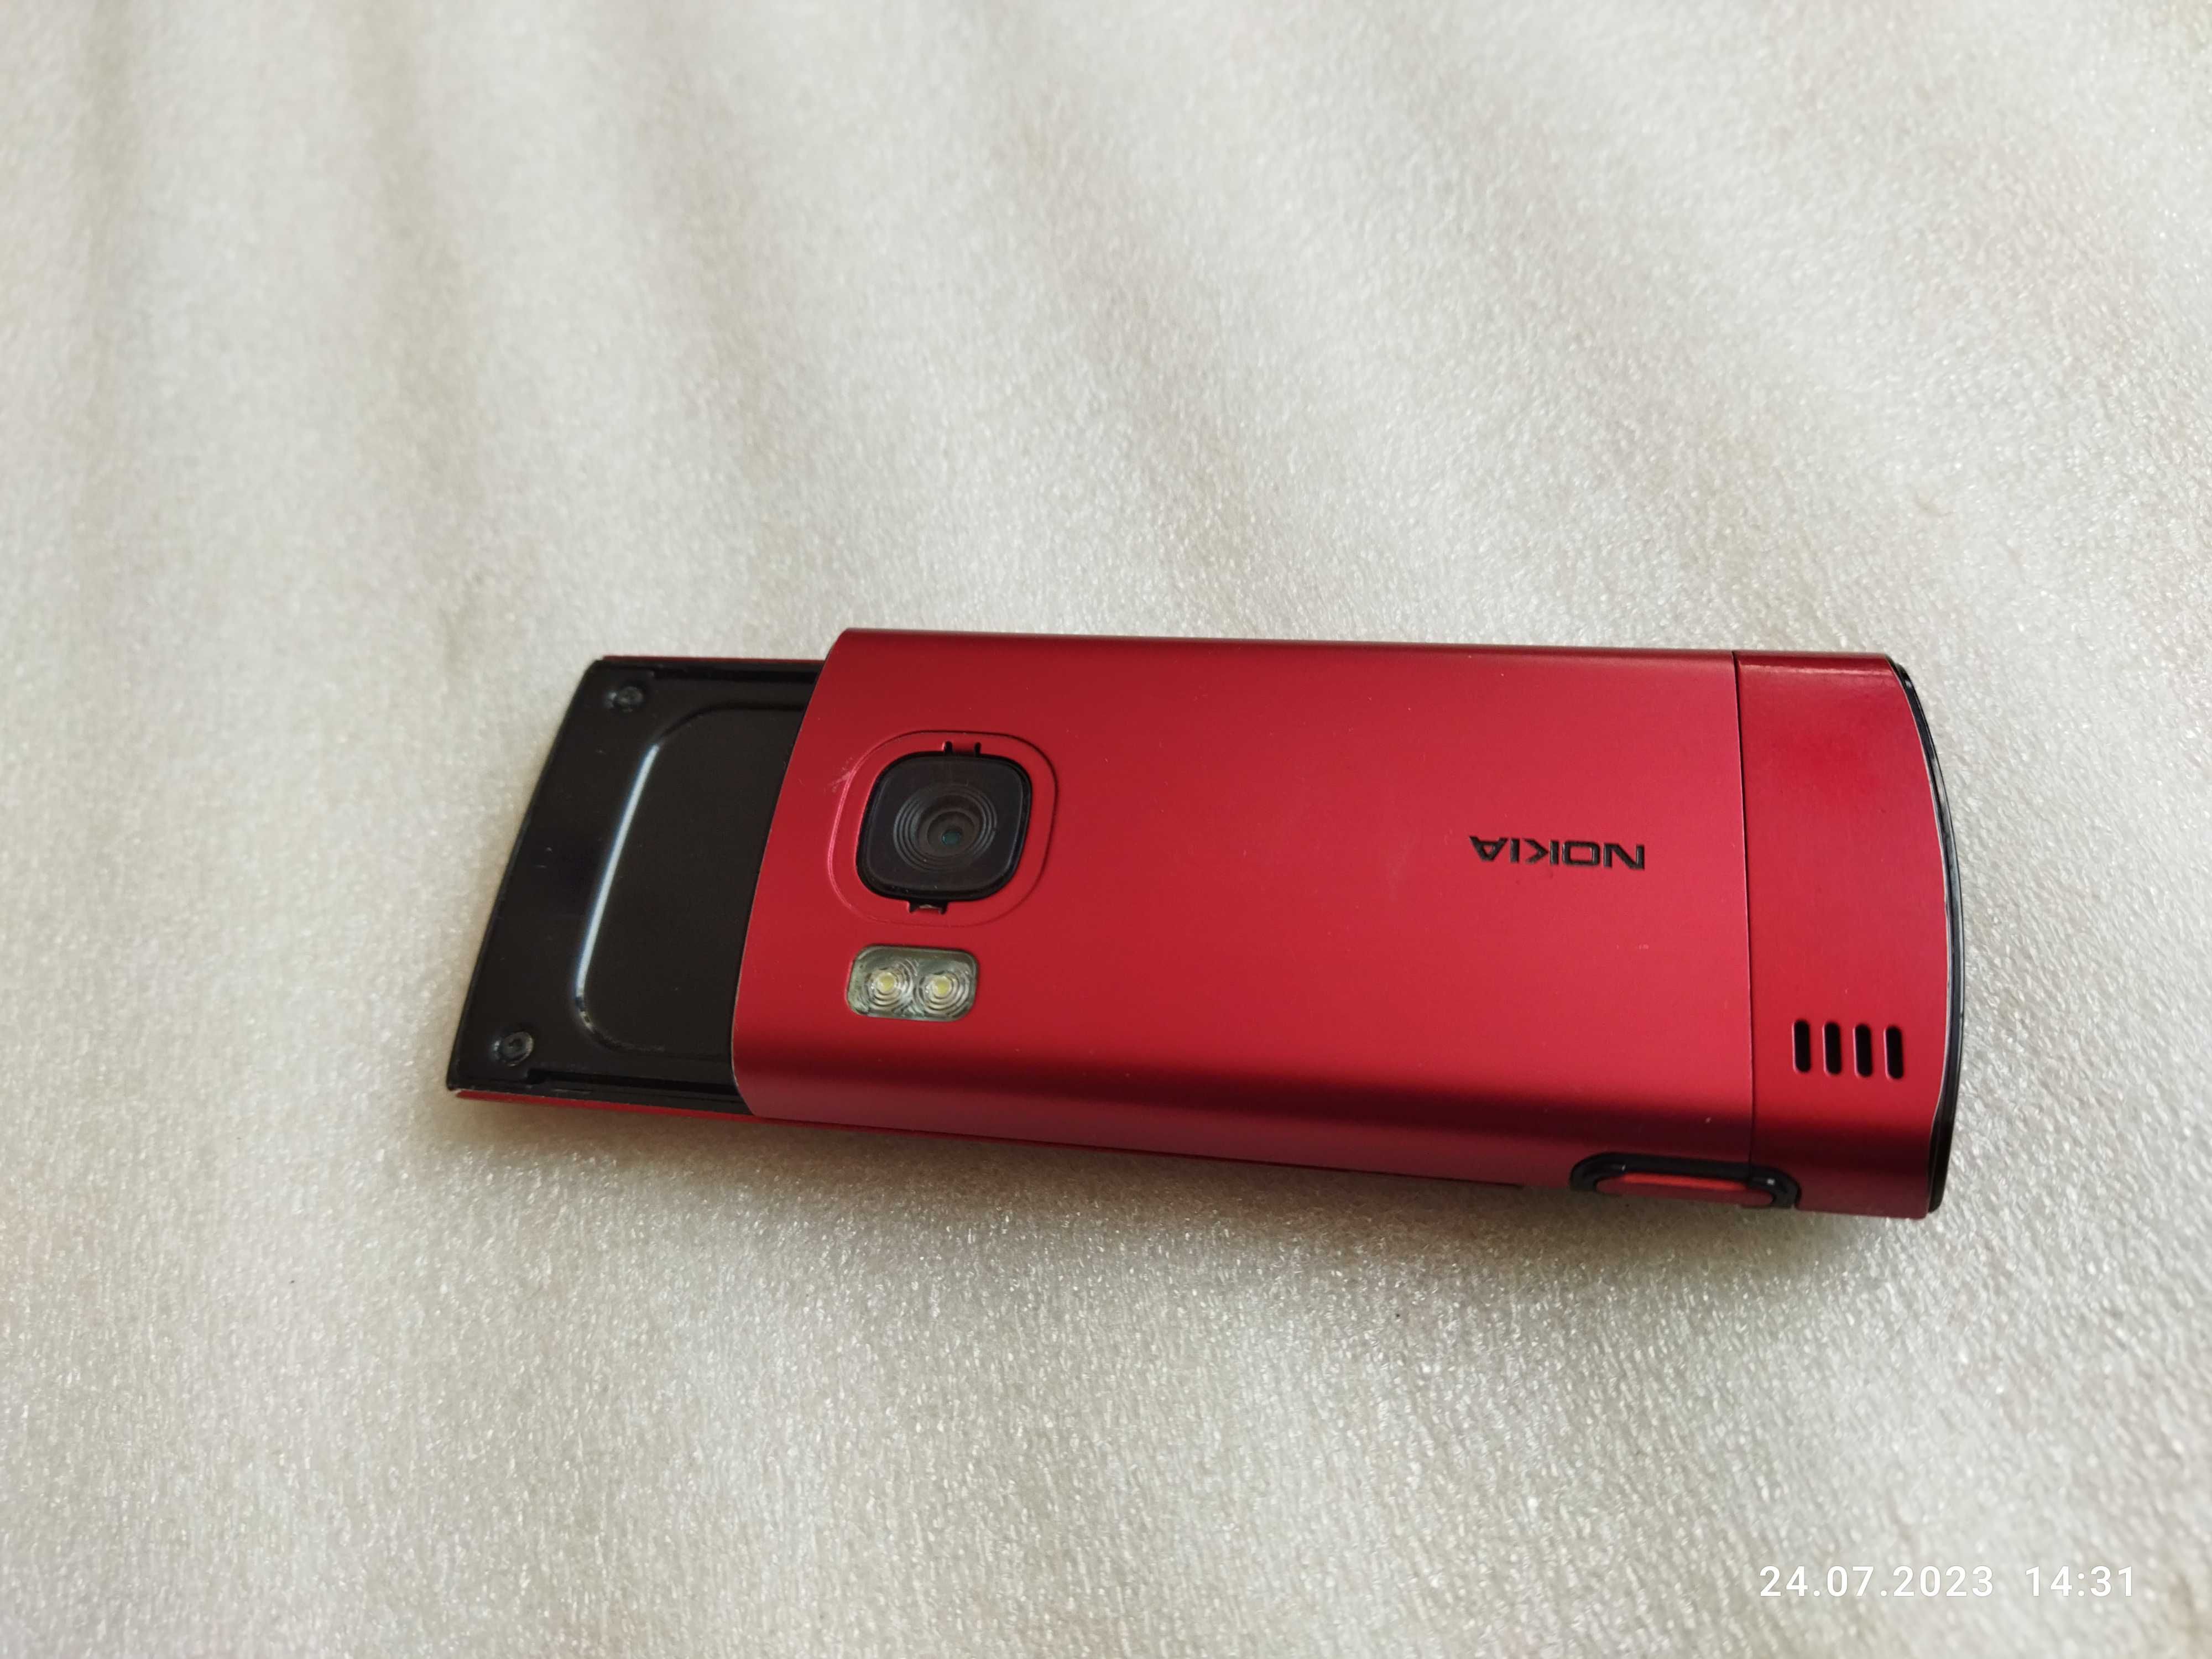 Nokia 6700 Slide W bardzo ładnym stanie